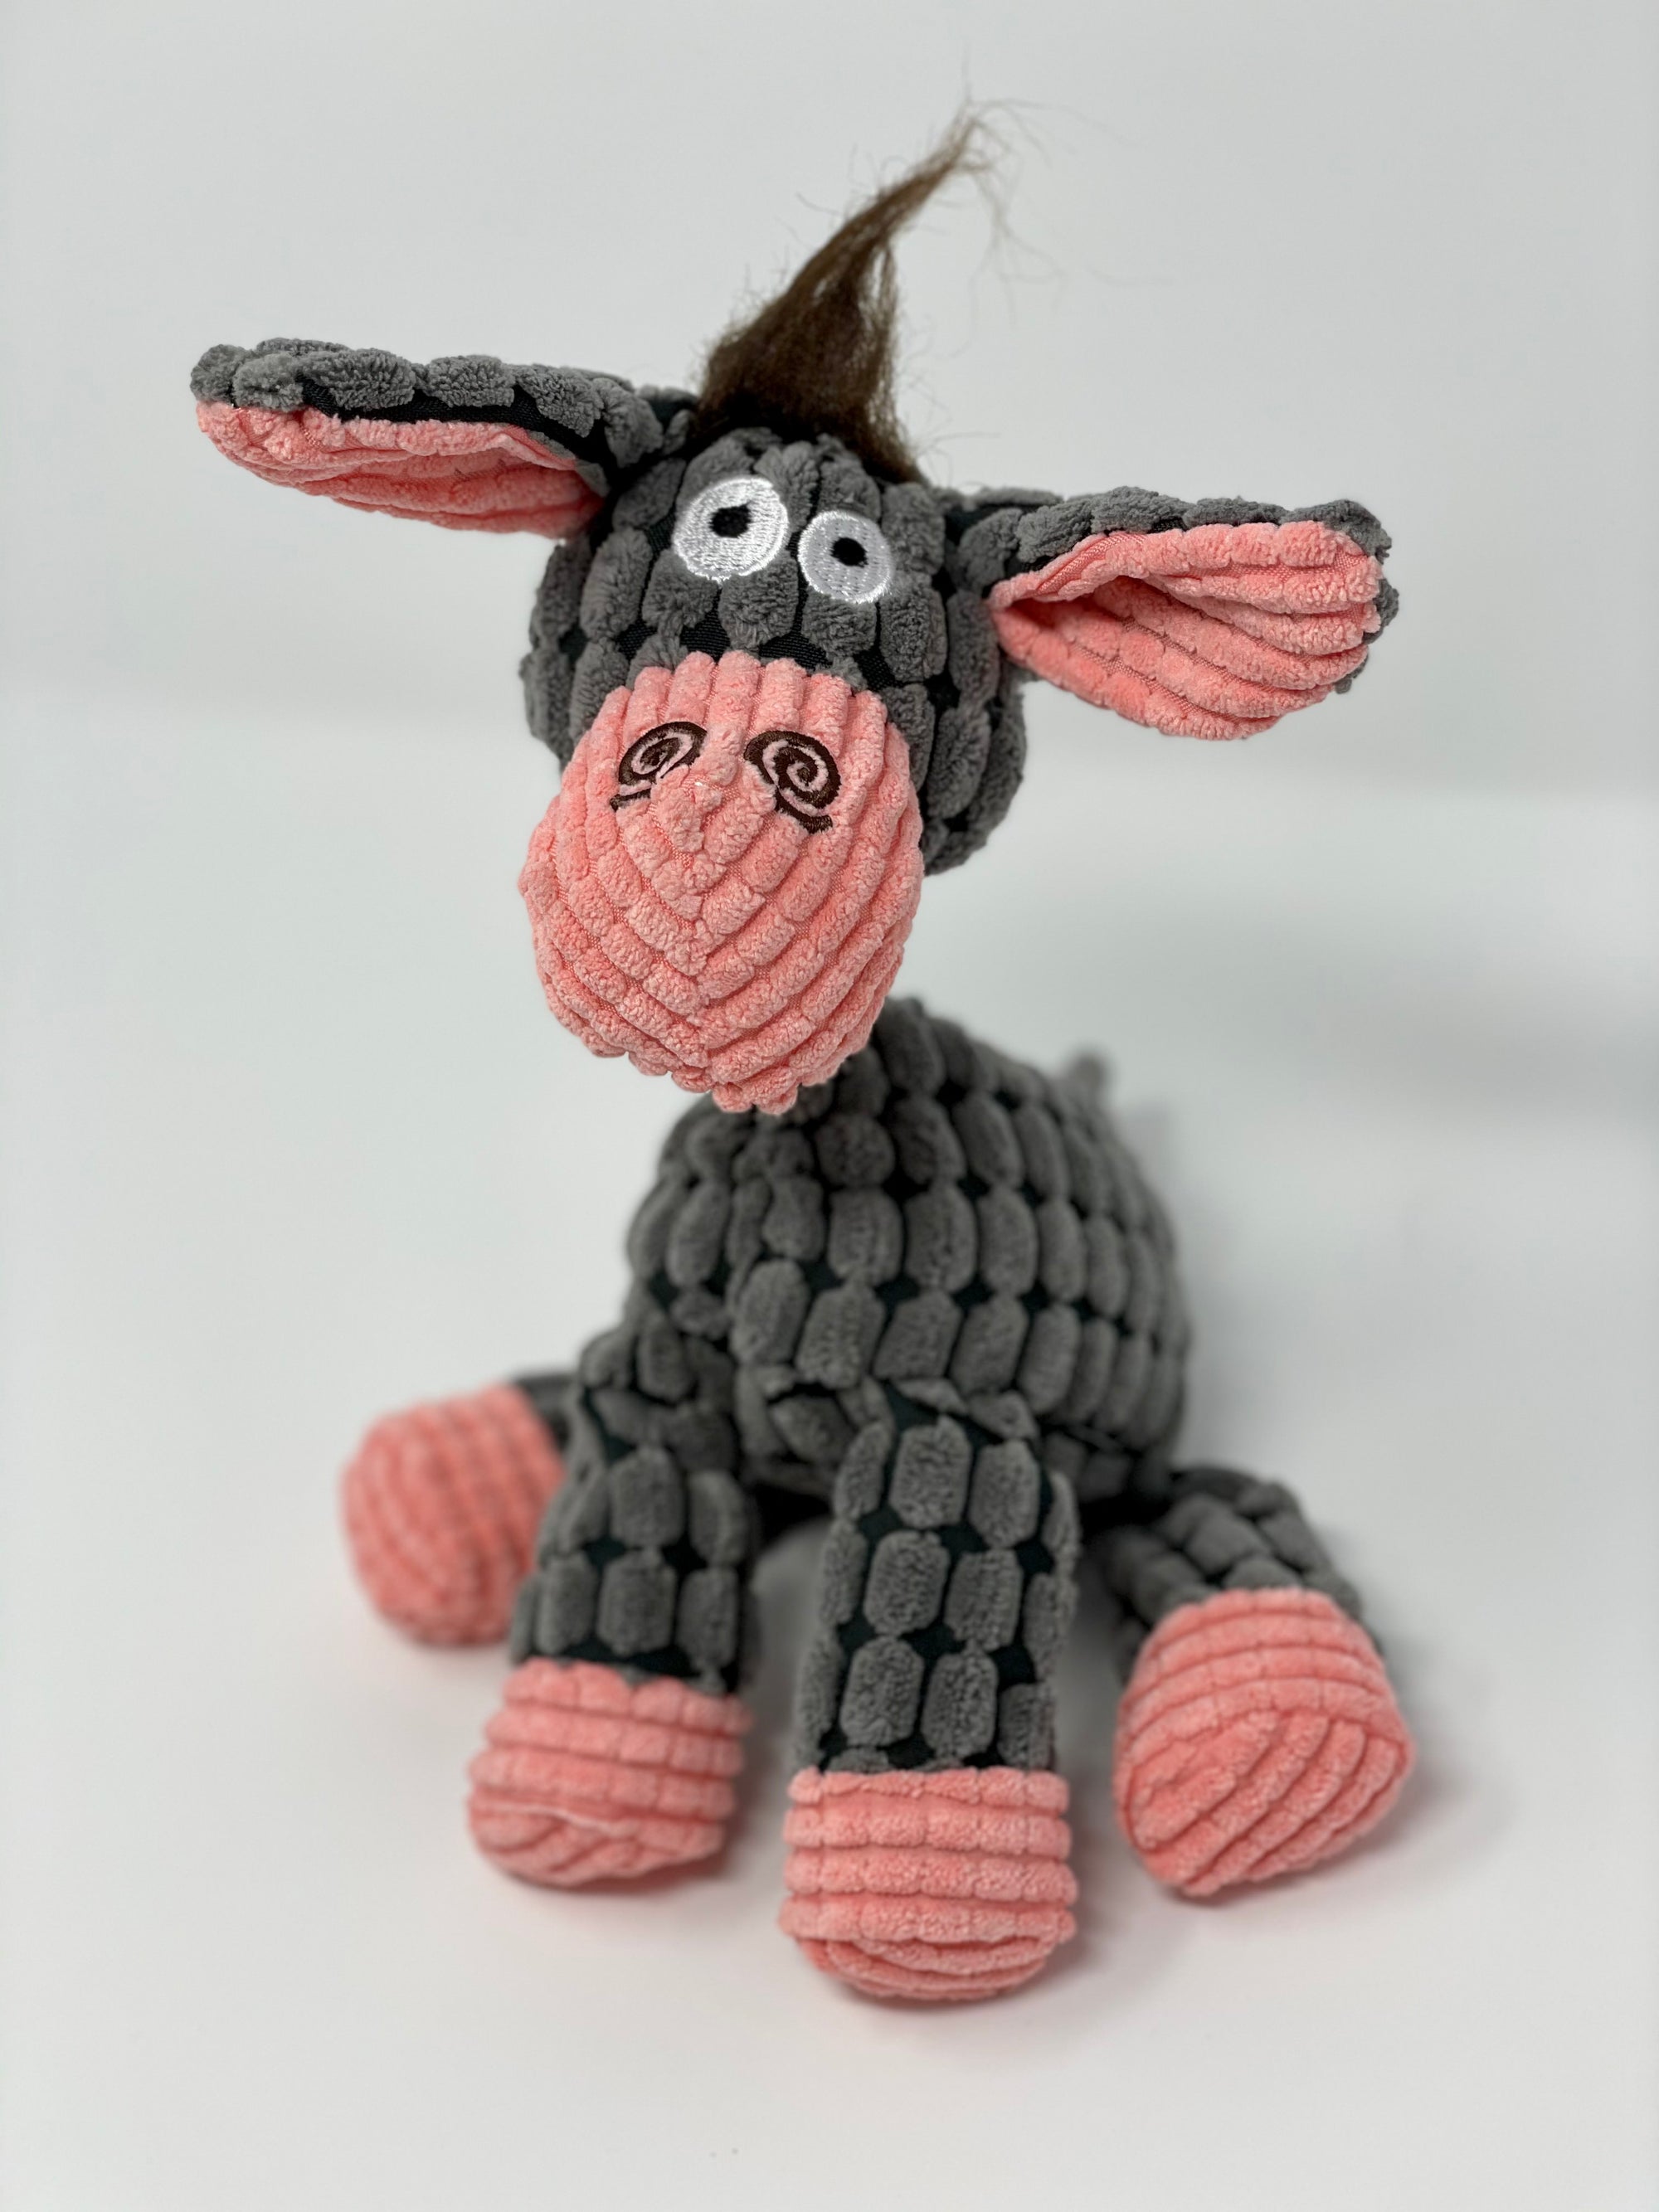 Donkey Toy